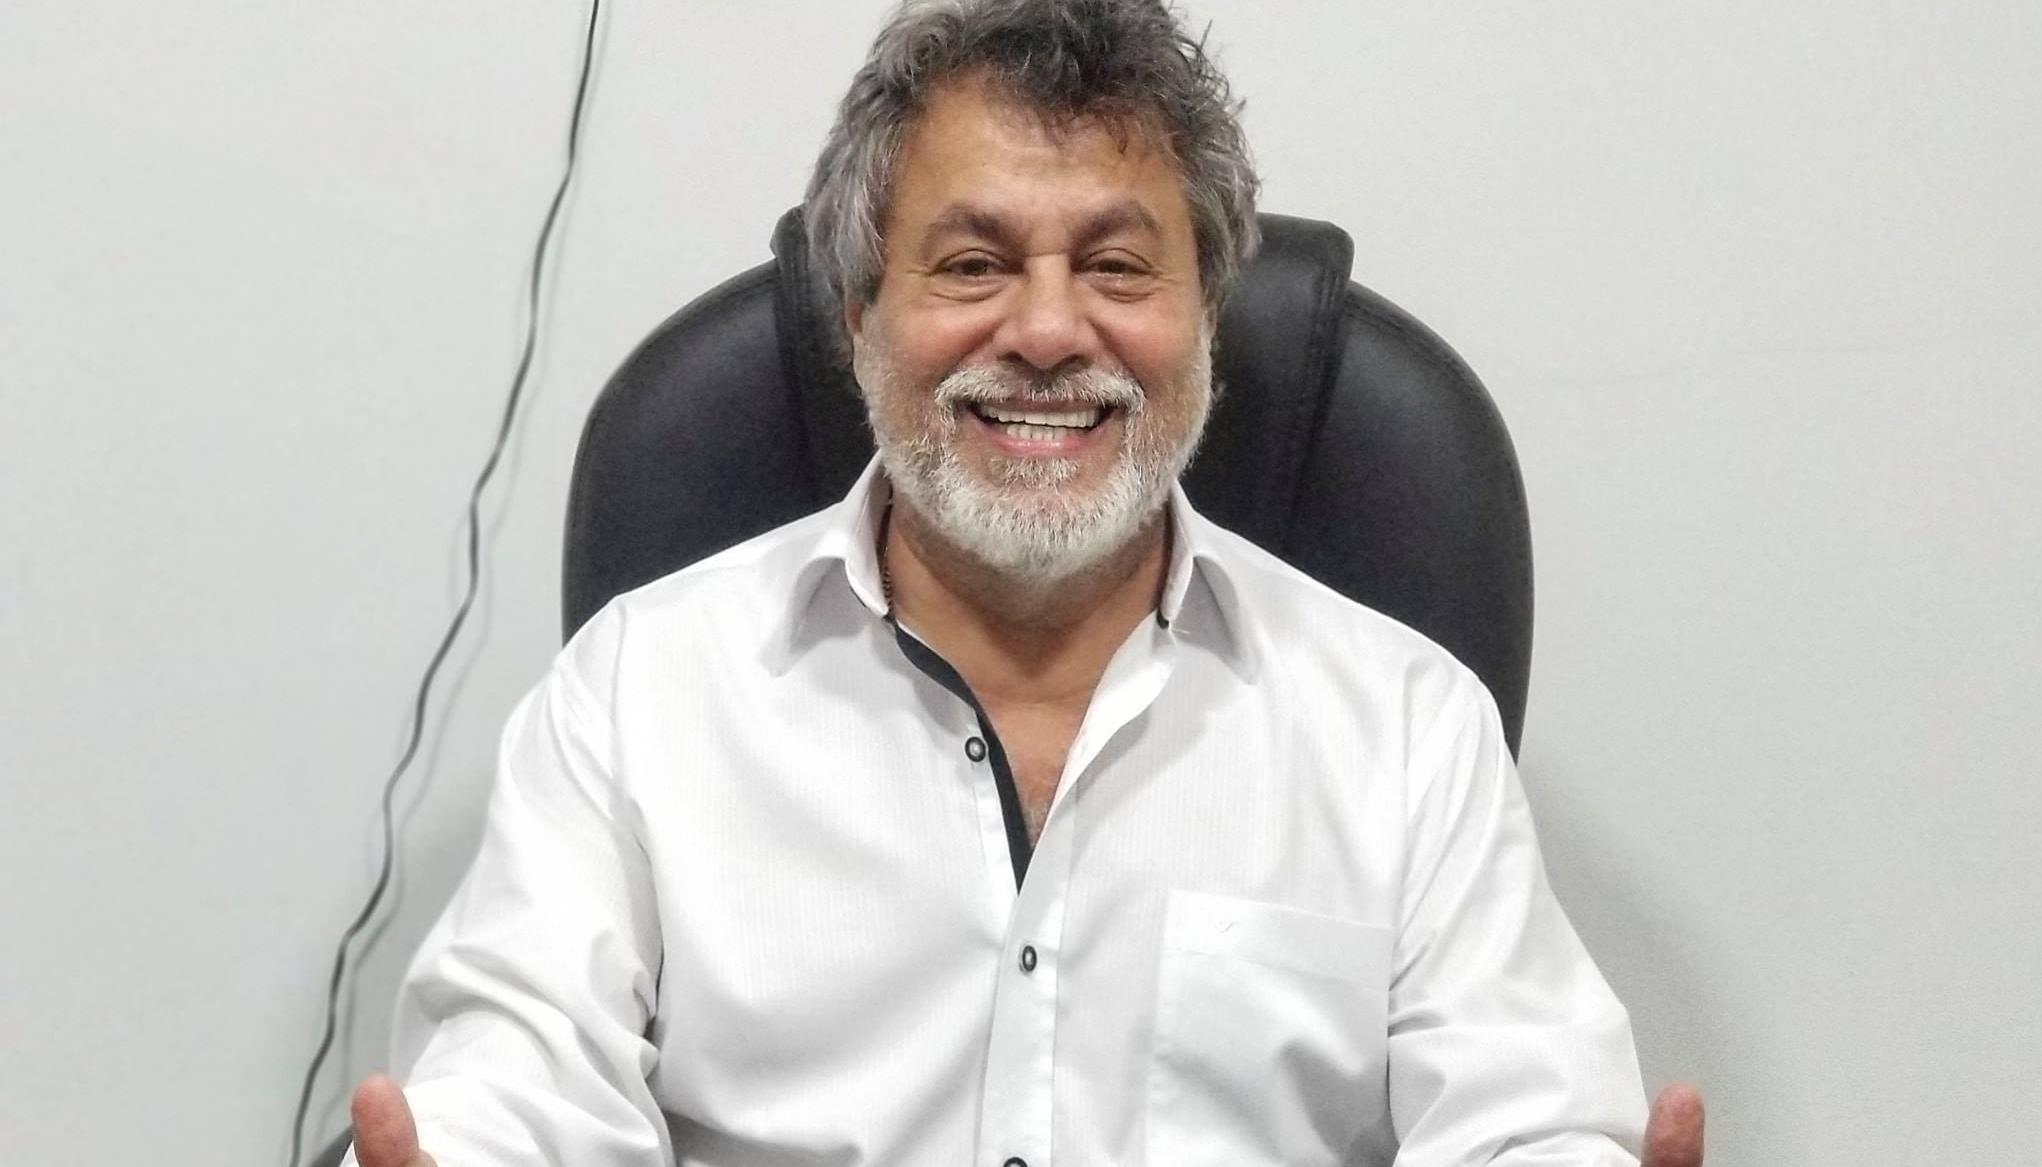 El médico pediatra Oswaldo Díaz fue concejal de Barranquilla durante 23 años